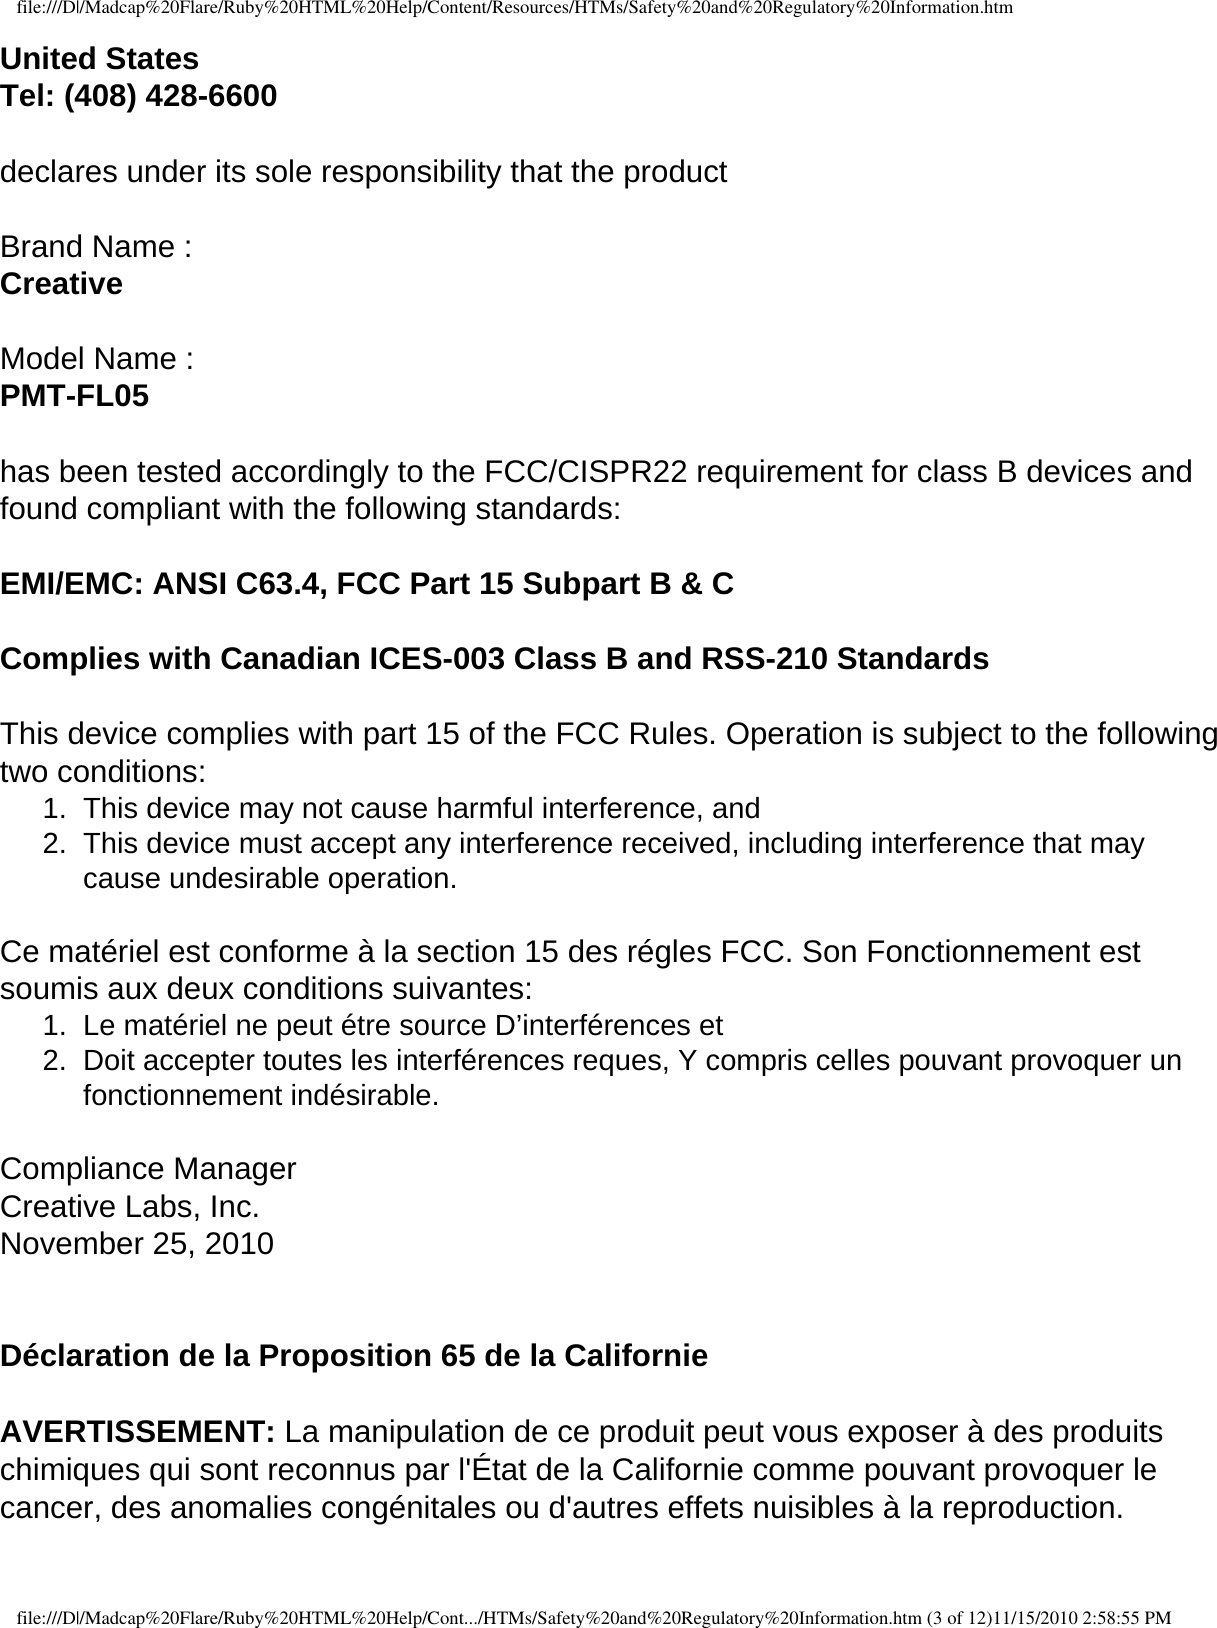 file:///D|/Madcap%20Flare/Ruby%20HTML%20Help/Content/Resources/HTMs/Safety%20and%20Regulatory%20Information.htmUnited States Tel: (408) 428-6600  declares under its sole responsibility that the product    Brand Name : Creative  Model Name : PMT-FL05  has been tested accordingly to the FCC/CISPR22 requirement for class B devices and found compliant with the following standards:    EMI/EMC: ANSI C63.4, FCC Part 15 Subpart B &amp; C    Complies with Canadian ICES-003 Class B and RSS-210 Standards    This device complies with part 15 of the FCC Rules. Operation is subject to the following two conditions: 1.  This device may not cause harmful interference, and 2.  This device must accept any interference received, including interference that may cause undesirable operation.    Ce matériel est conforme à la section 15 des régles FCC. Son Fonctionnement est soumis aux deux conditions suivantes: 1.  Le matériel ne peut étre source D’interférences et 2.  Doit accepter toutes les interférences reques, Y compris celles pouvant provoquer un fonctionnement indésirable.    Compliance Manager Creative Labs, Inc. November 25, 2010   Déclaration de la Proposition 65 de la Californie  AVERTISSEMENT: La manipulation de ce produit peut vous exposer à des produits chimiques qui sont reconnus par l&apos;État de la Californie comme pouvant provoquer le cancer, des anomalies congénitales ou d&apos;autres effets nuisibles à la reproduction.   file:///D|/Madcap%20Flare/Ruby%20HTML%20Help/Cont.../HTMs/Safety%20and%20Regulatory%20Information.htm (3 of 12)11/15/2010 2:58:55 PM